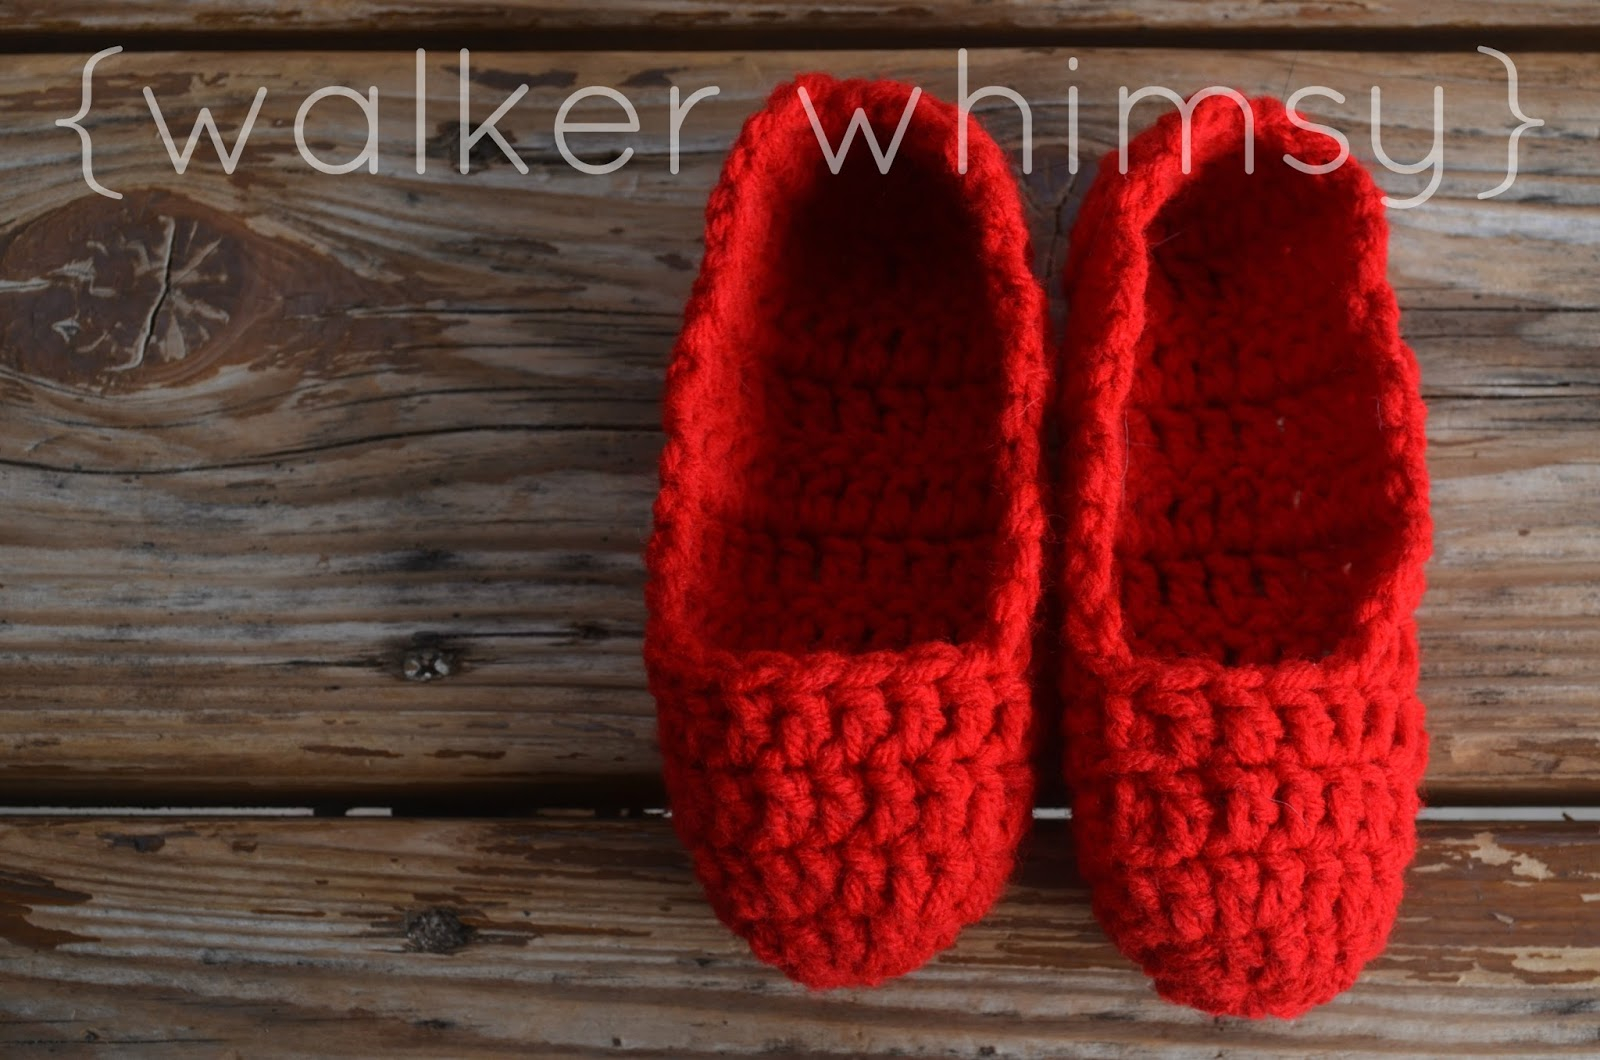 Crochet Slipper Patterns For Toddlers Walker Whimsy Crazy Easy Kid Slippers Potm